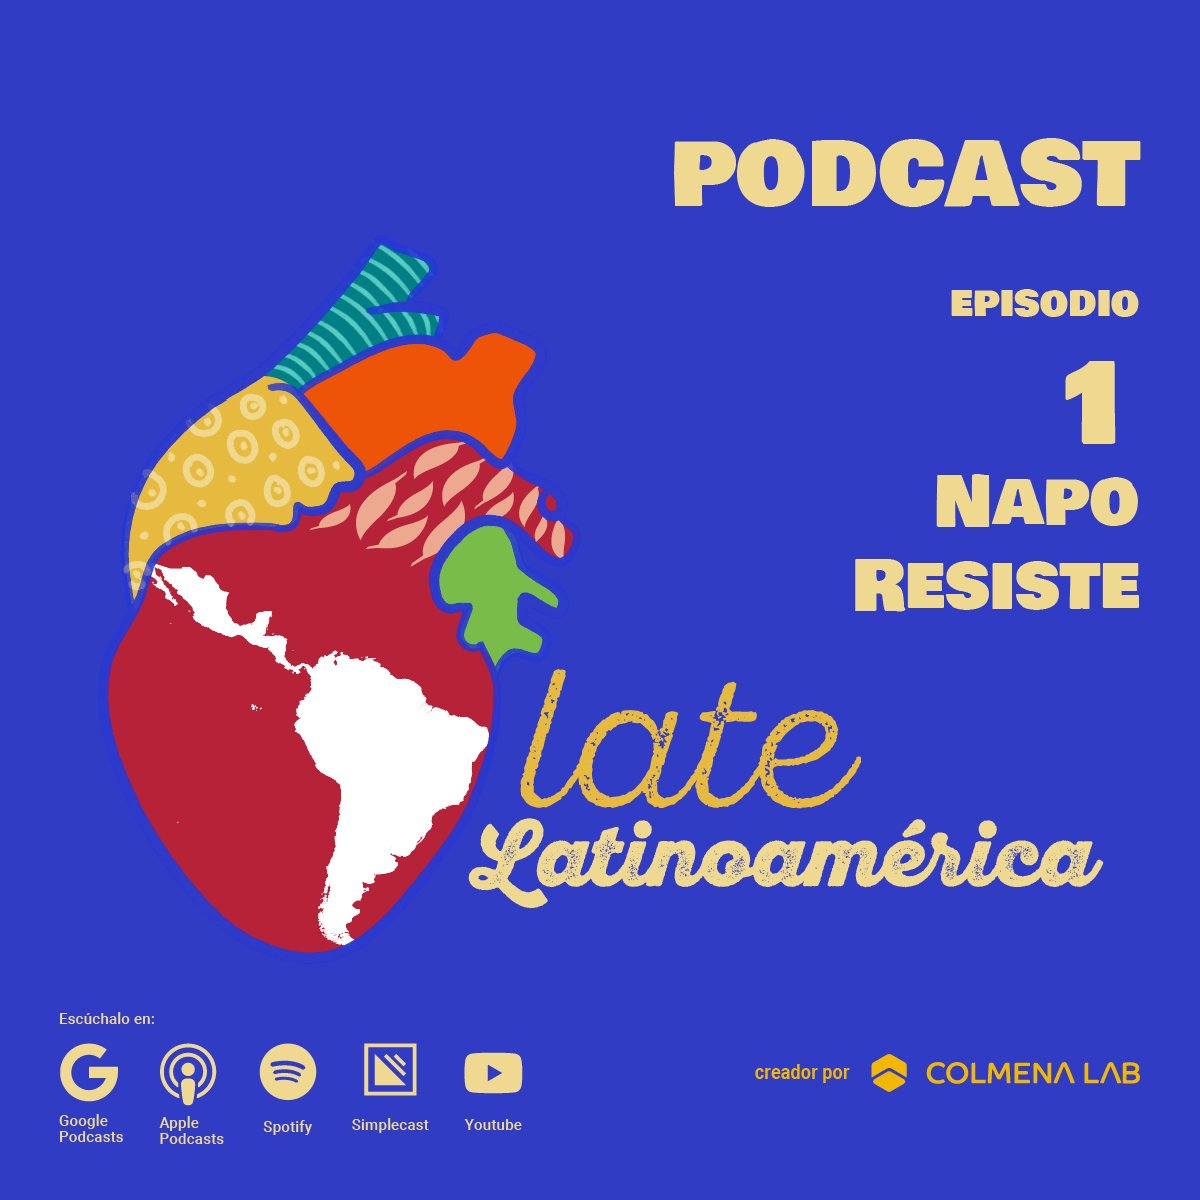 ¡Escucha el primer episodio #LateLatinoamérica!
Titulamos a nuestro primer episodio #NapoResiste en conmemoración al trabajo que realizan organizaciones, comunidades y personas extraordinarias para defender la Provincia de #Napo de la #minería.
linktr.ee/latelatinoamer…